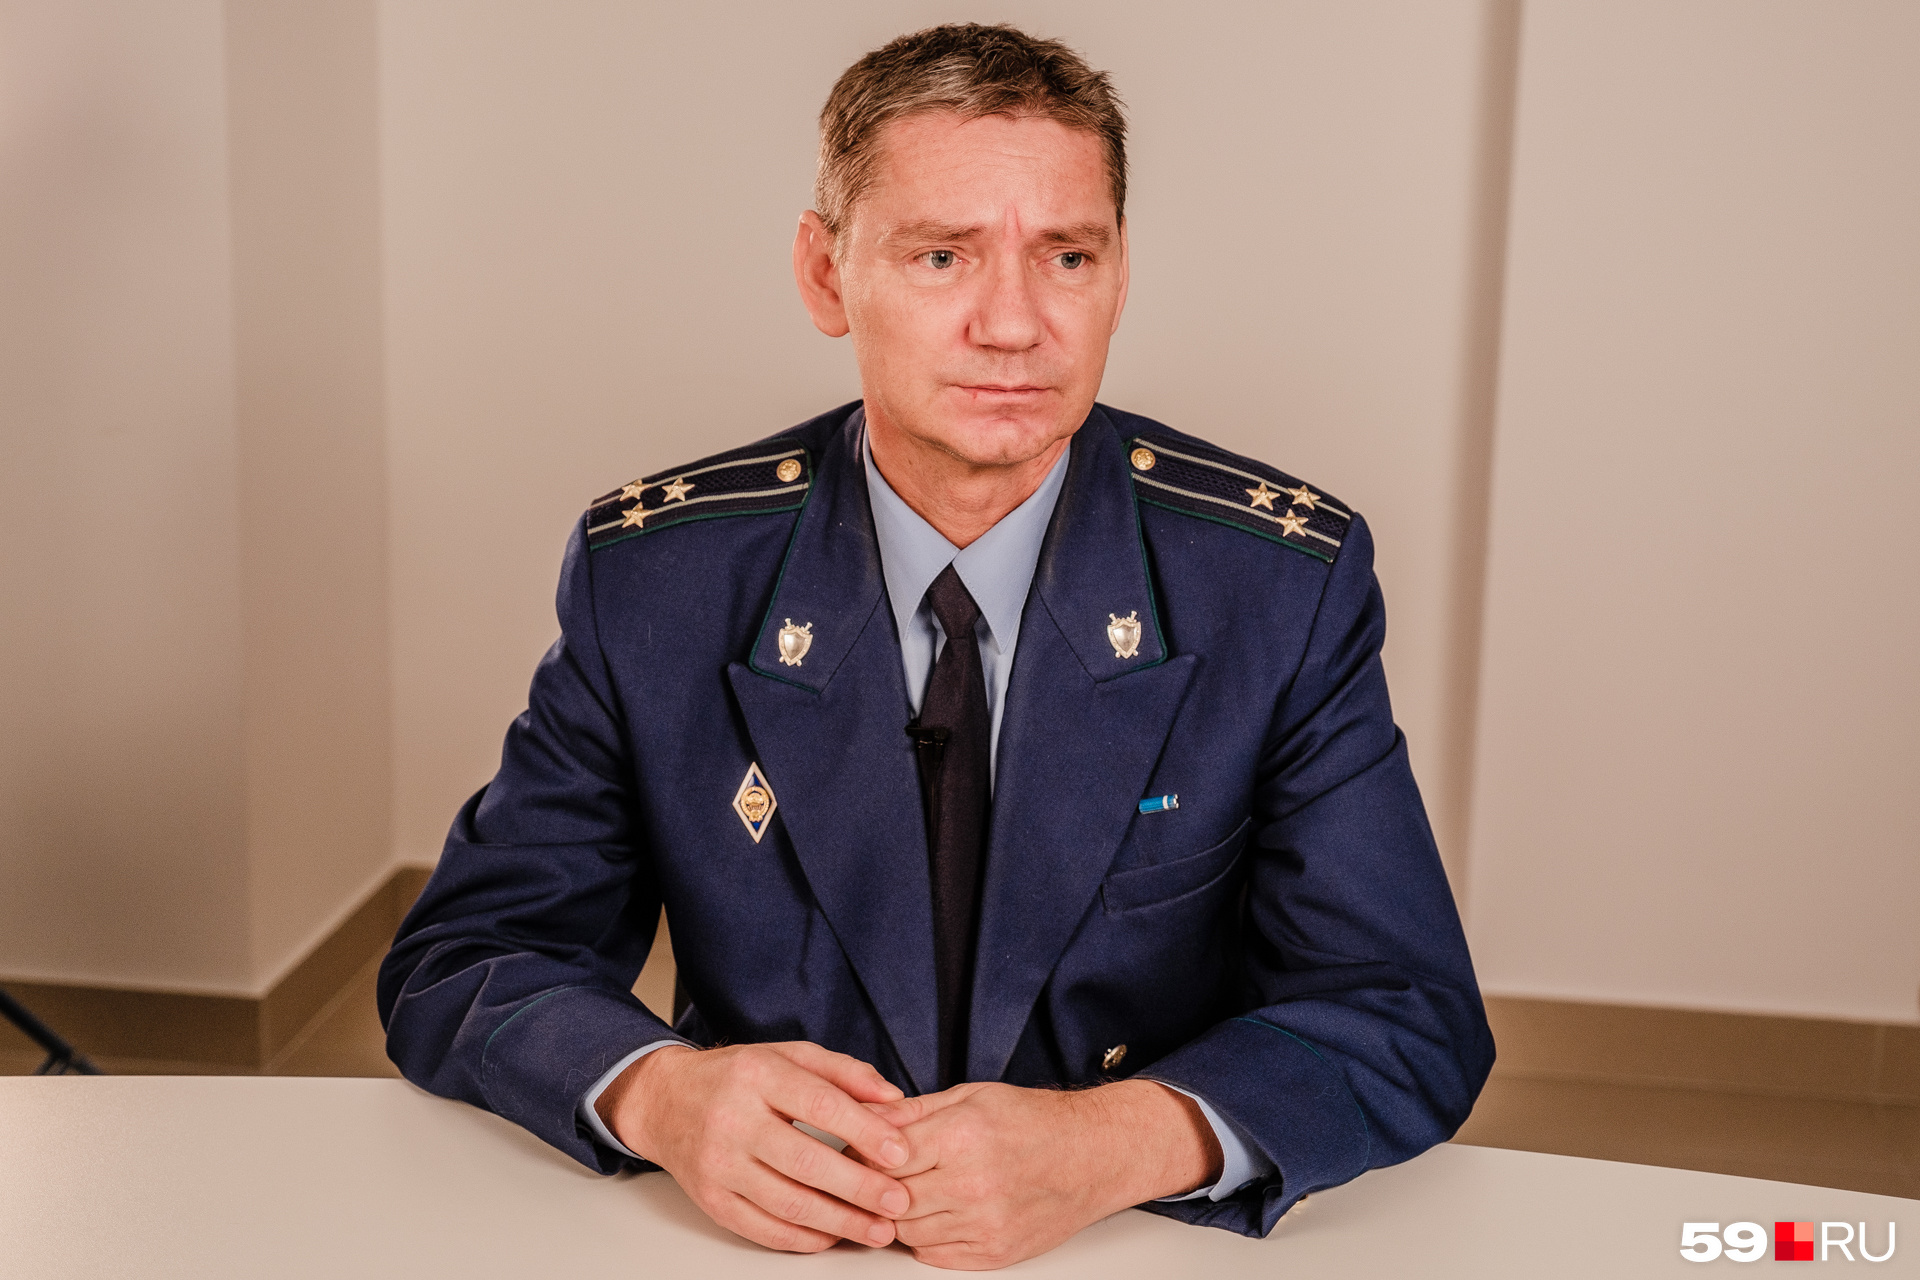 Вадим Казаринов участвовал в судебном процессе по «Хромой лошади» 2,5 года